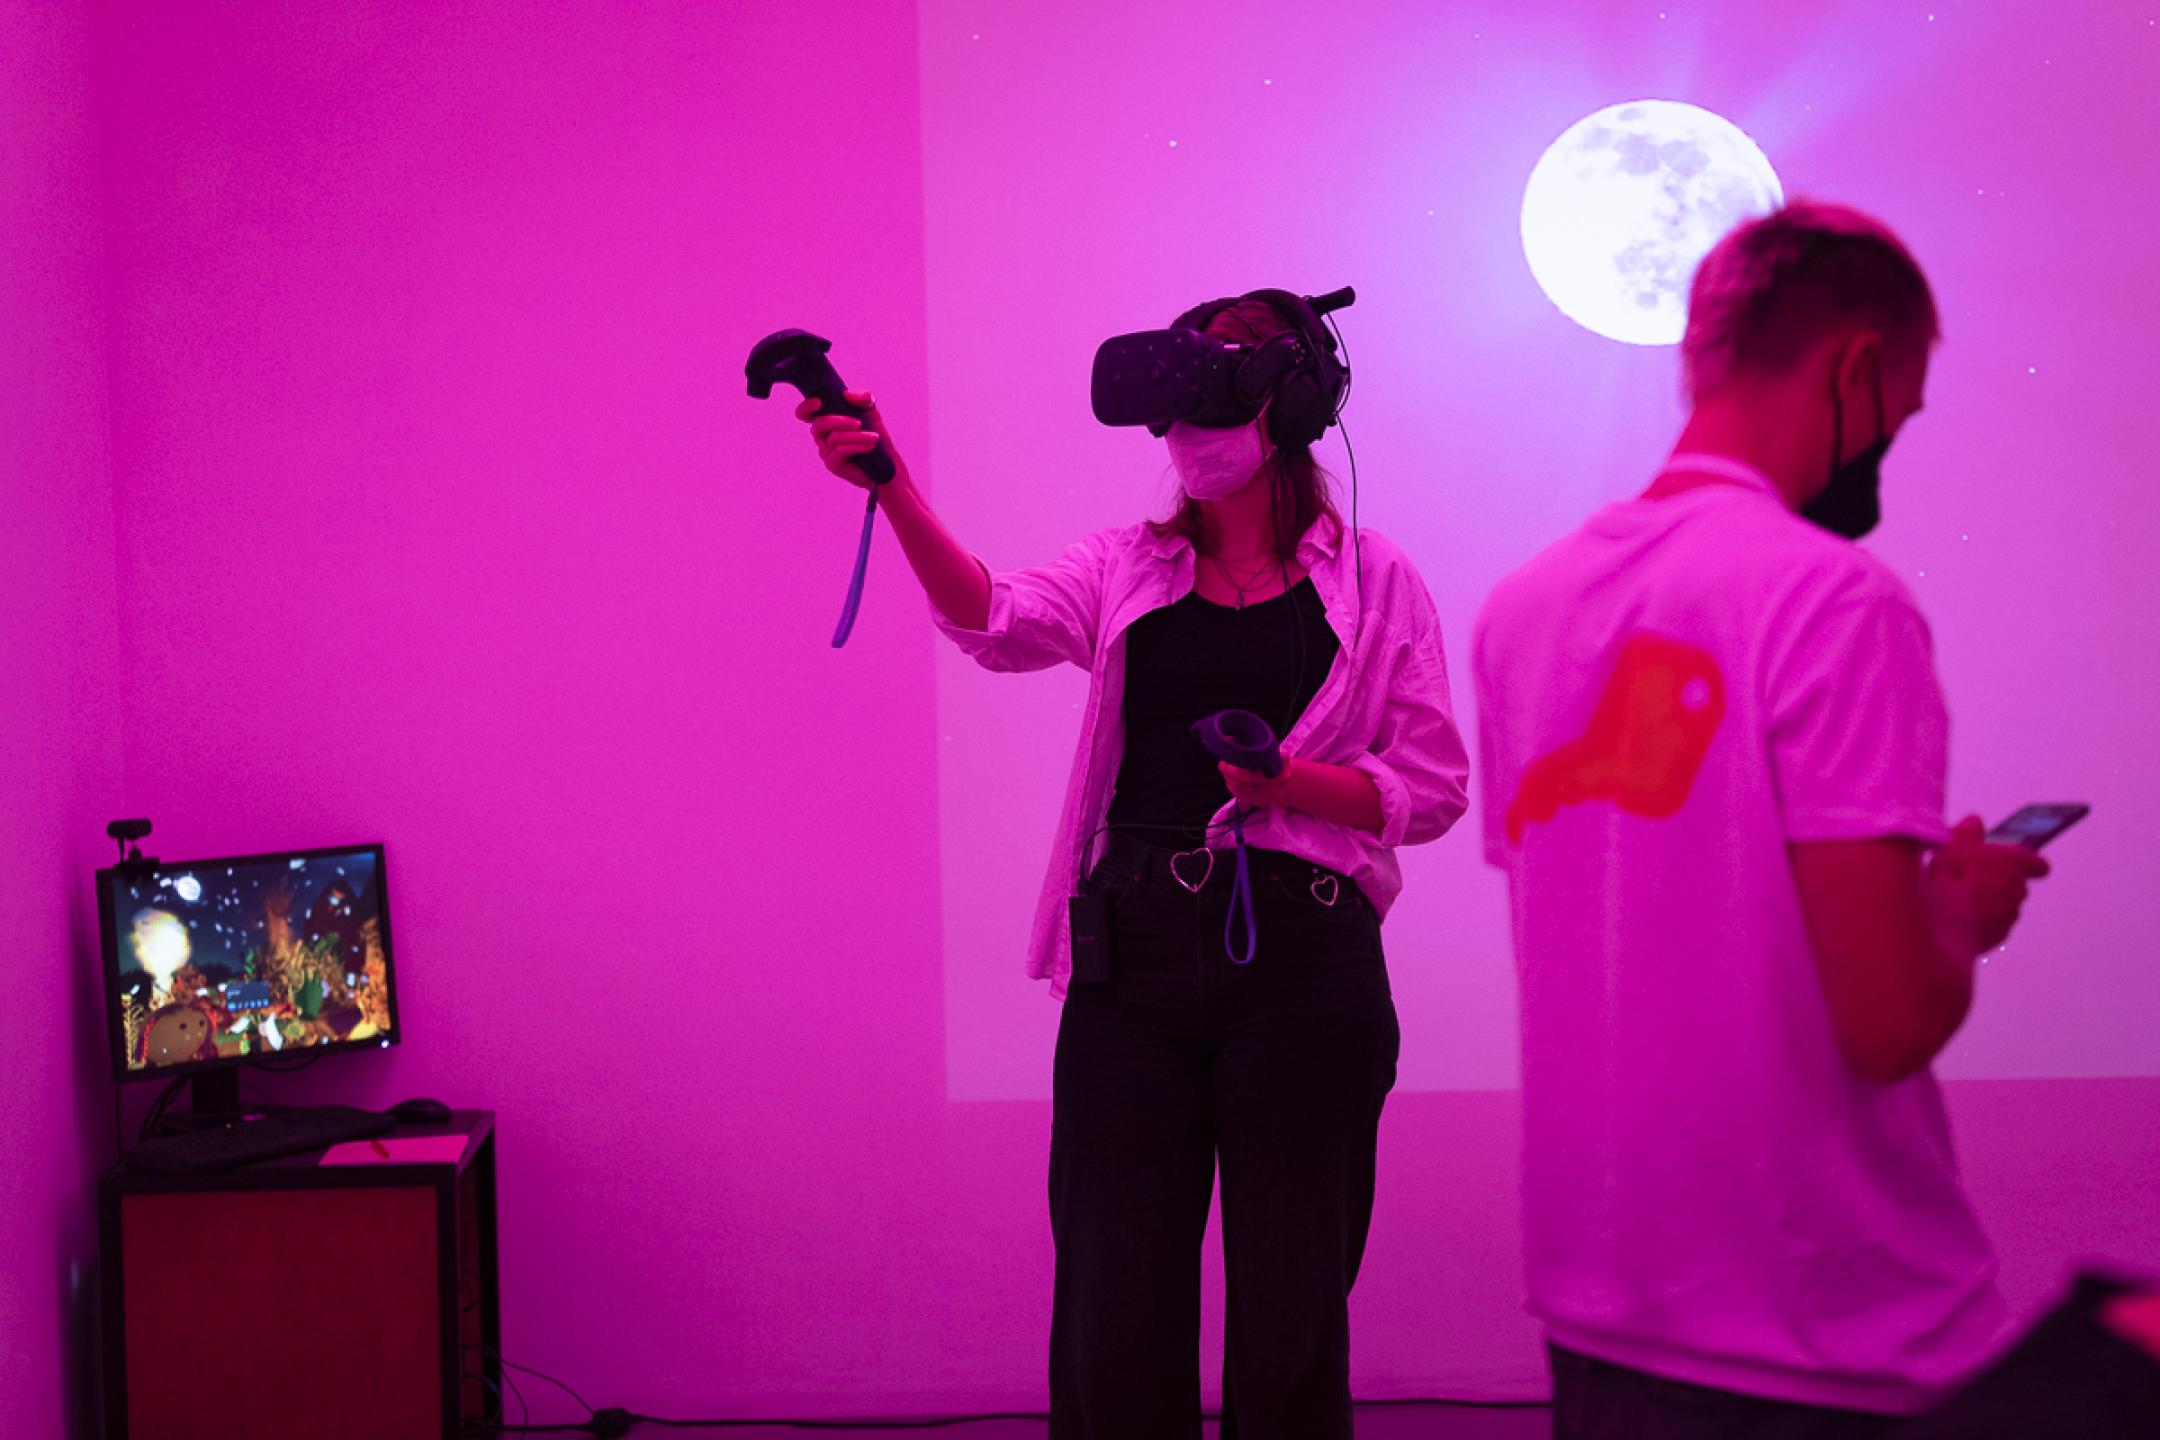 Eine Frau mit VR-Brille steht in einem pinken Raum und zeigt mit ihrer Hand mit einem VR-Controller nach oben. Hinter ihr wird ein leuchtender Planet an die Wand projiziert. In einer Ecke steht ein Bildschirm, der eine Landschaft mit Sternenhimmel bei Nacht zeigt.